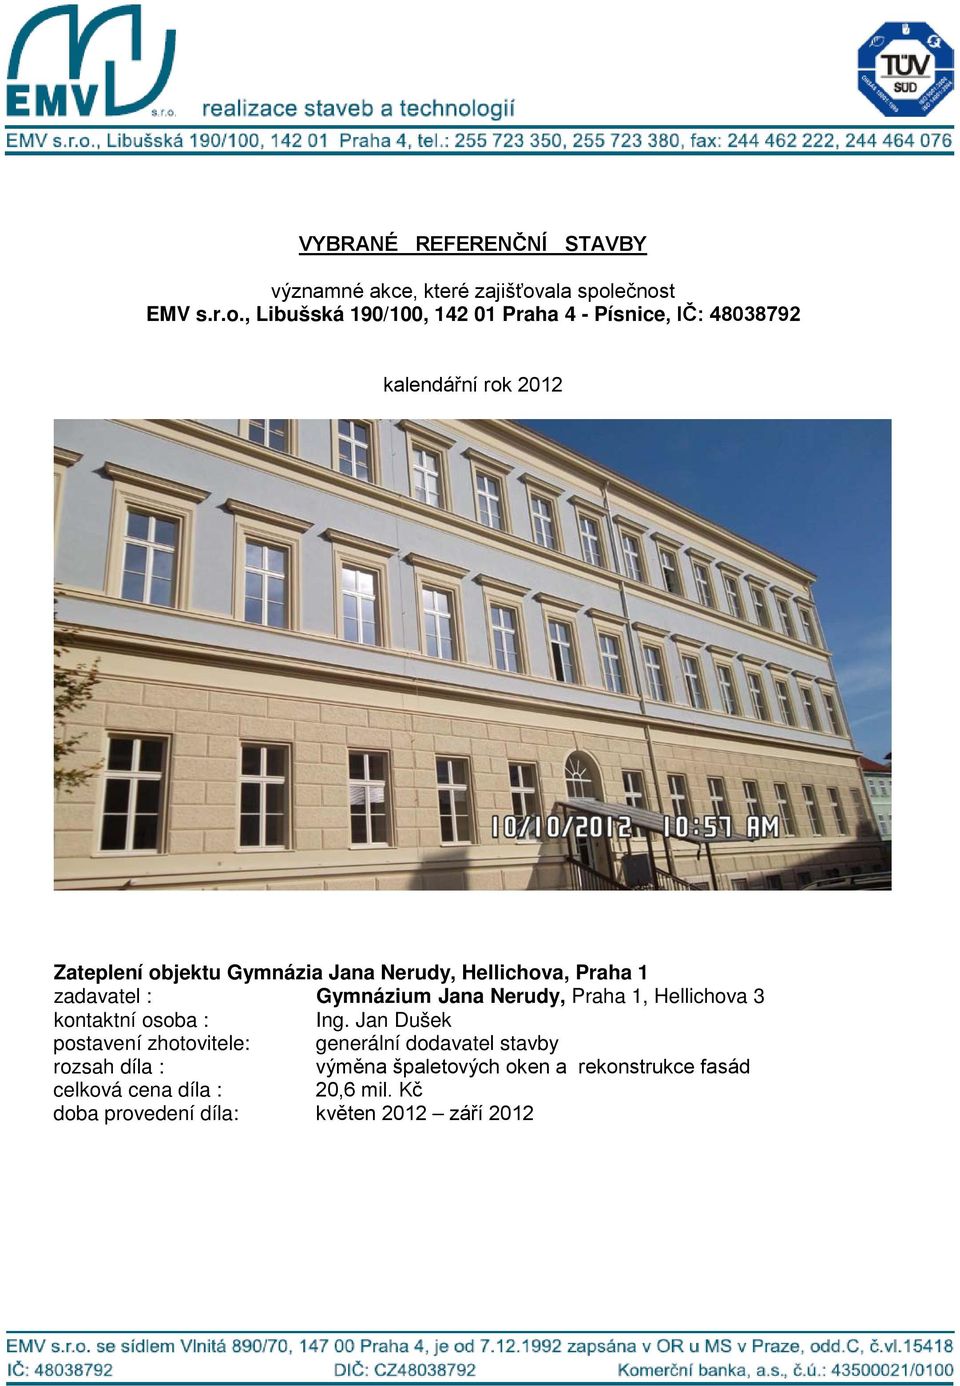 Ing. Jan Dušek výměna špaletových oken a rekonstrukce fasád